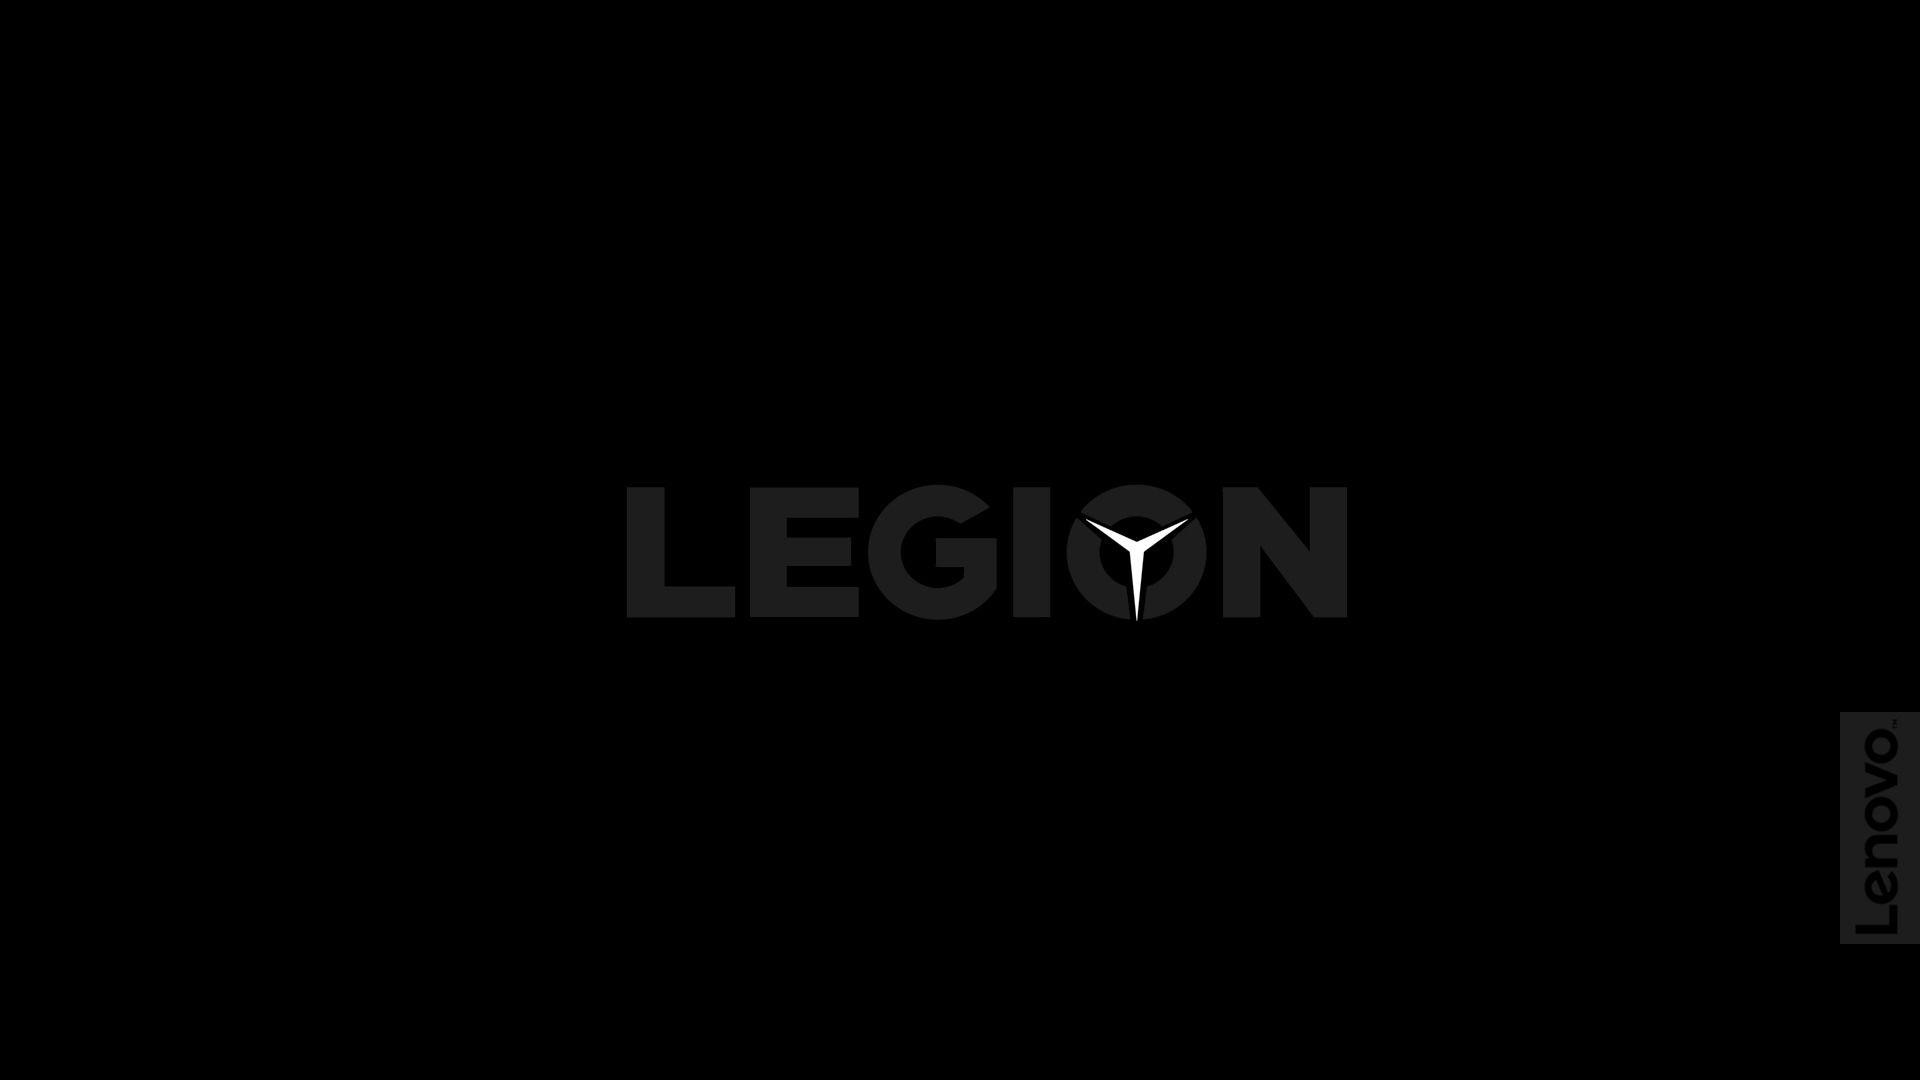 Legion HD wallpapers  Pxfuel